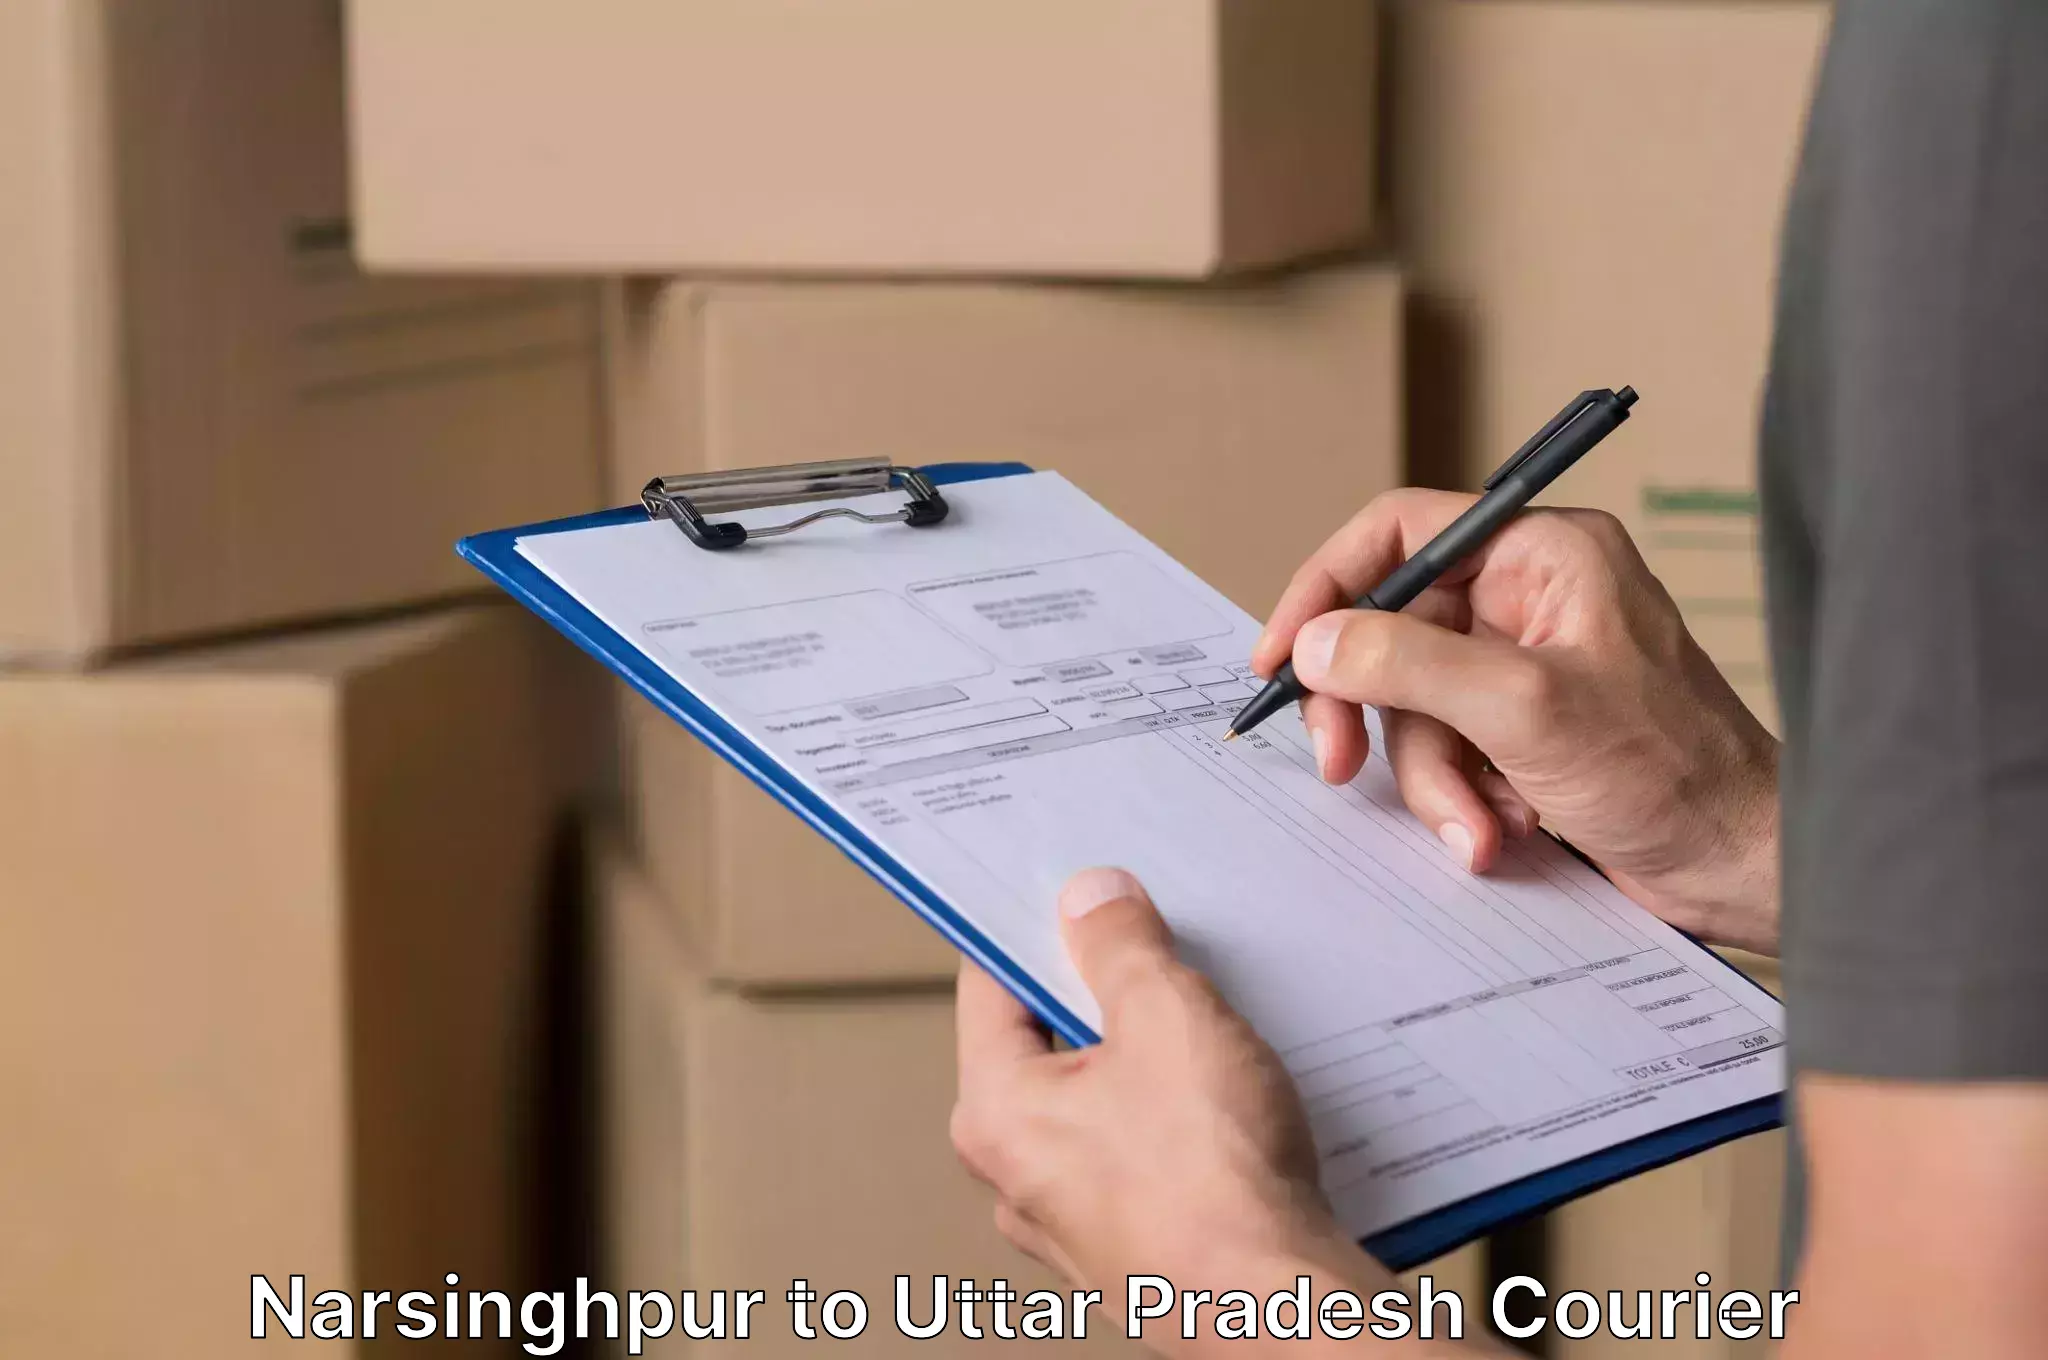 Efficient household movers in Narsinghpur to Akbarpur